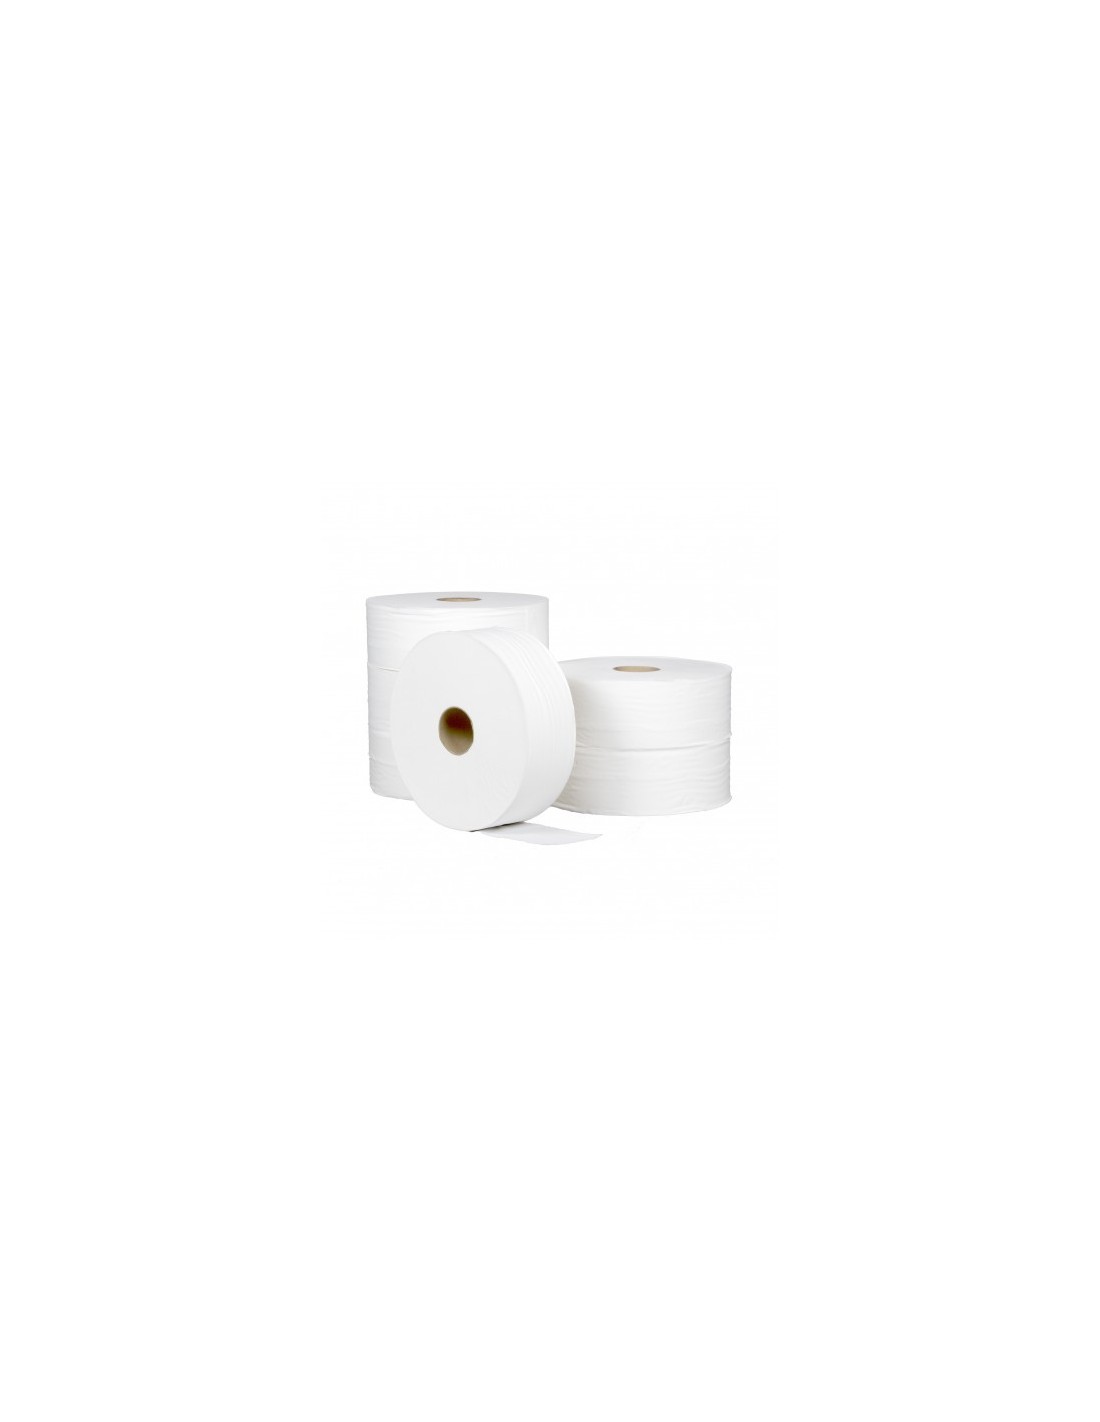 ECO MAXI JUMBO Papier Toilette 1 plis, 640 mètres, pack 6 rouleaux